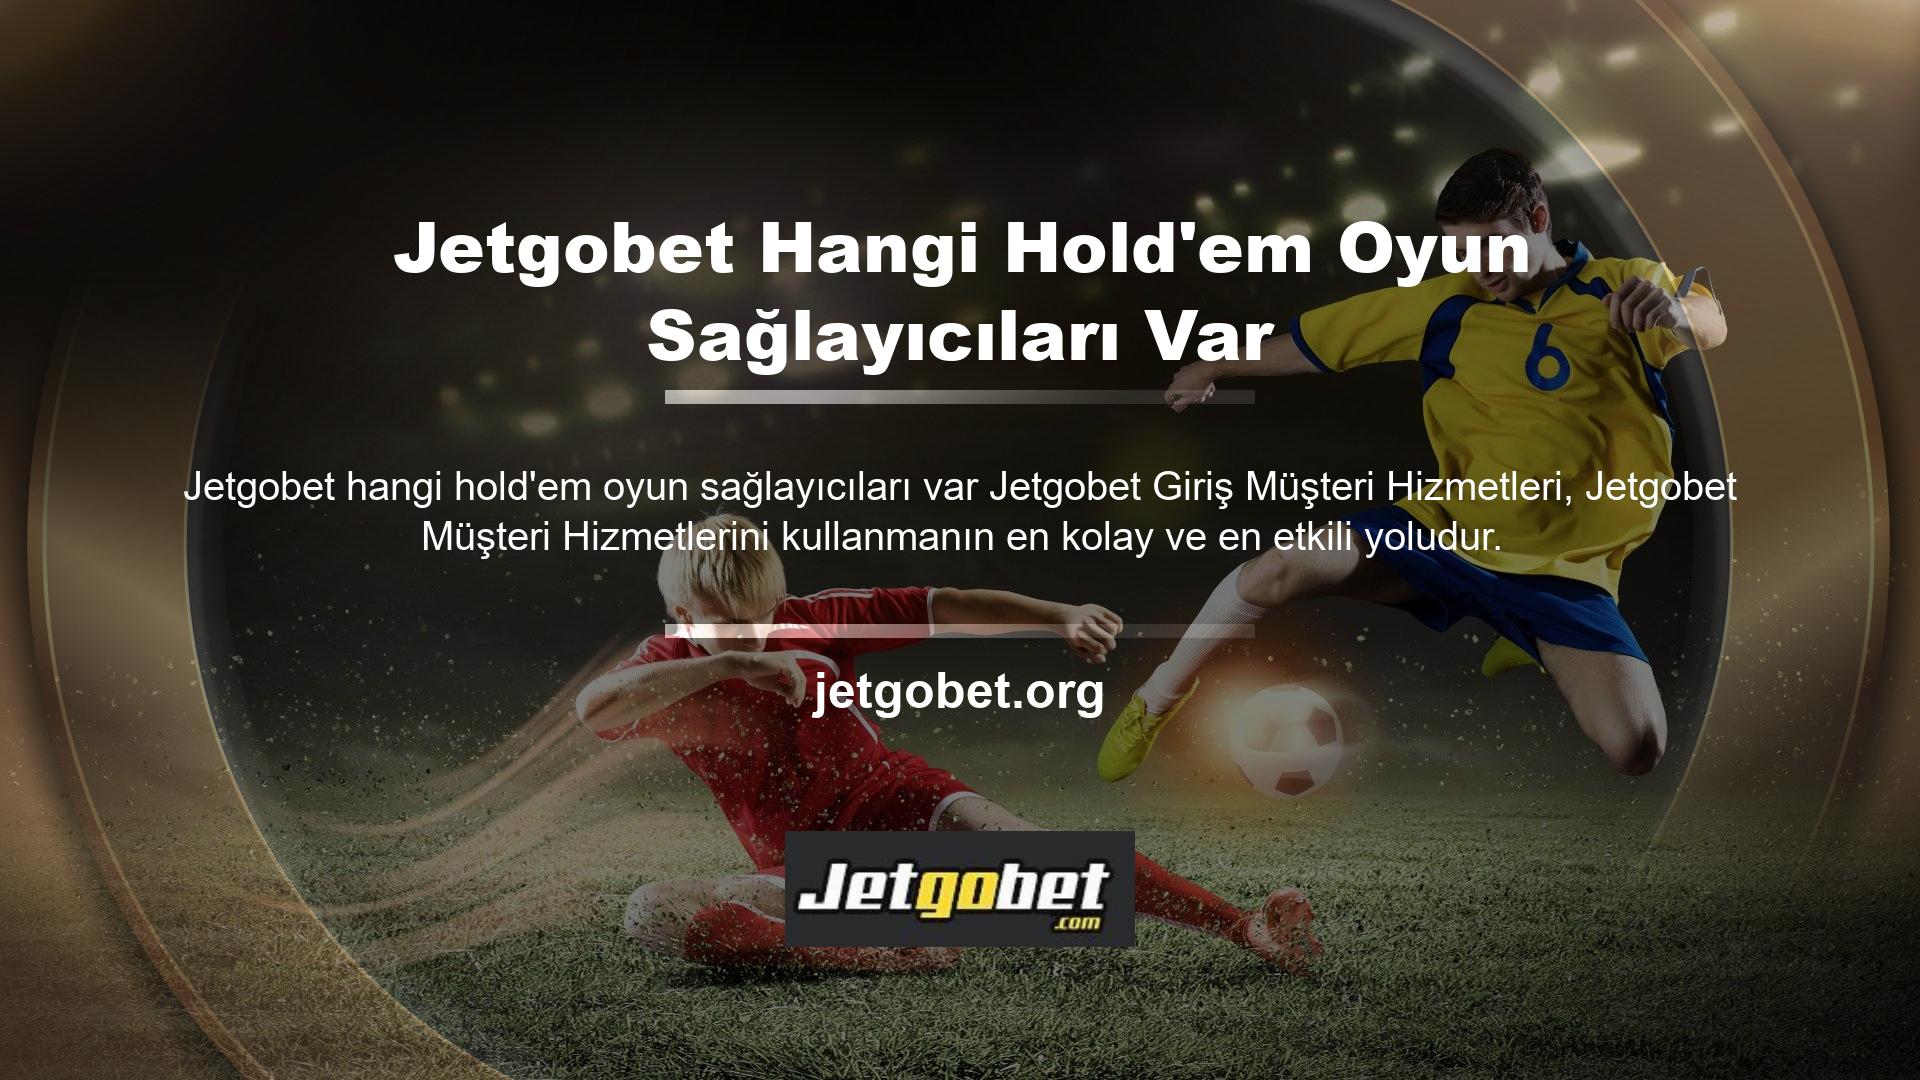 Lütfen sorunu resmi olarak bildirin ve Jetgobet Müşteri Hizmetlerine bir e-posta gönderin